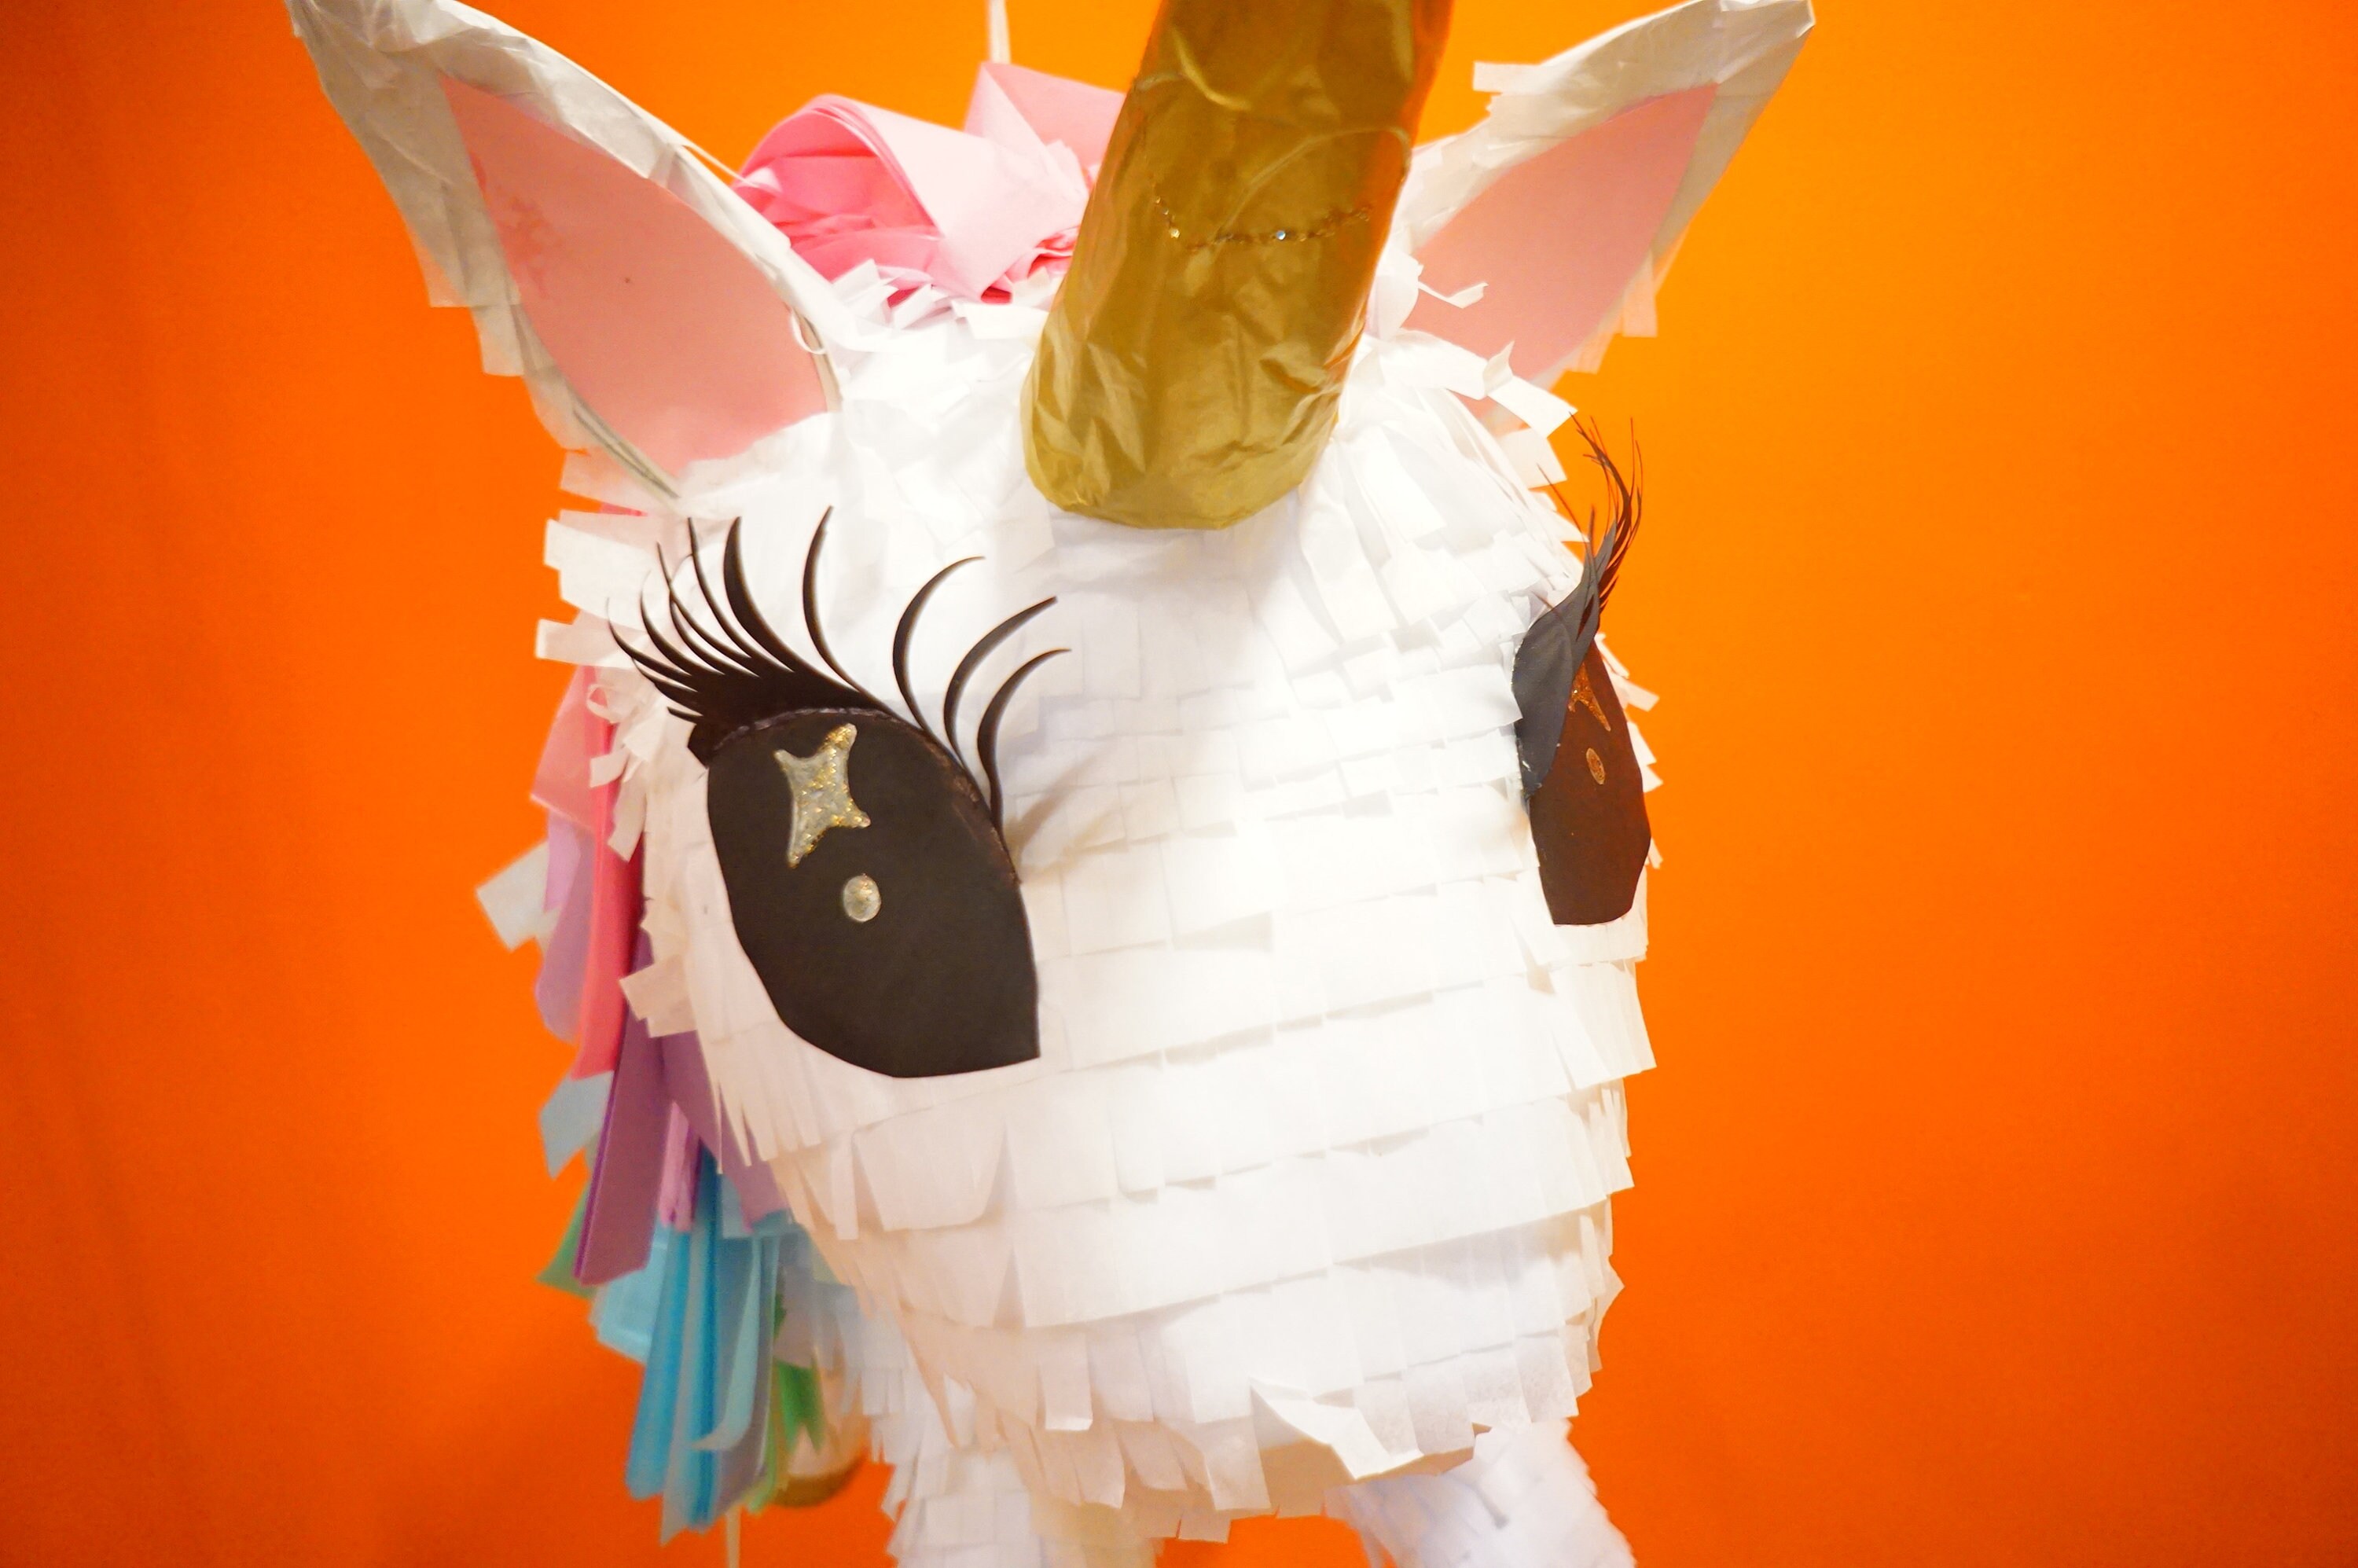 DIY : Comment faire sa propre piñata licorne ? - Minimall